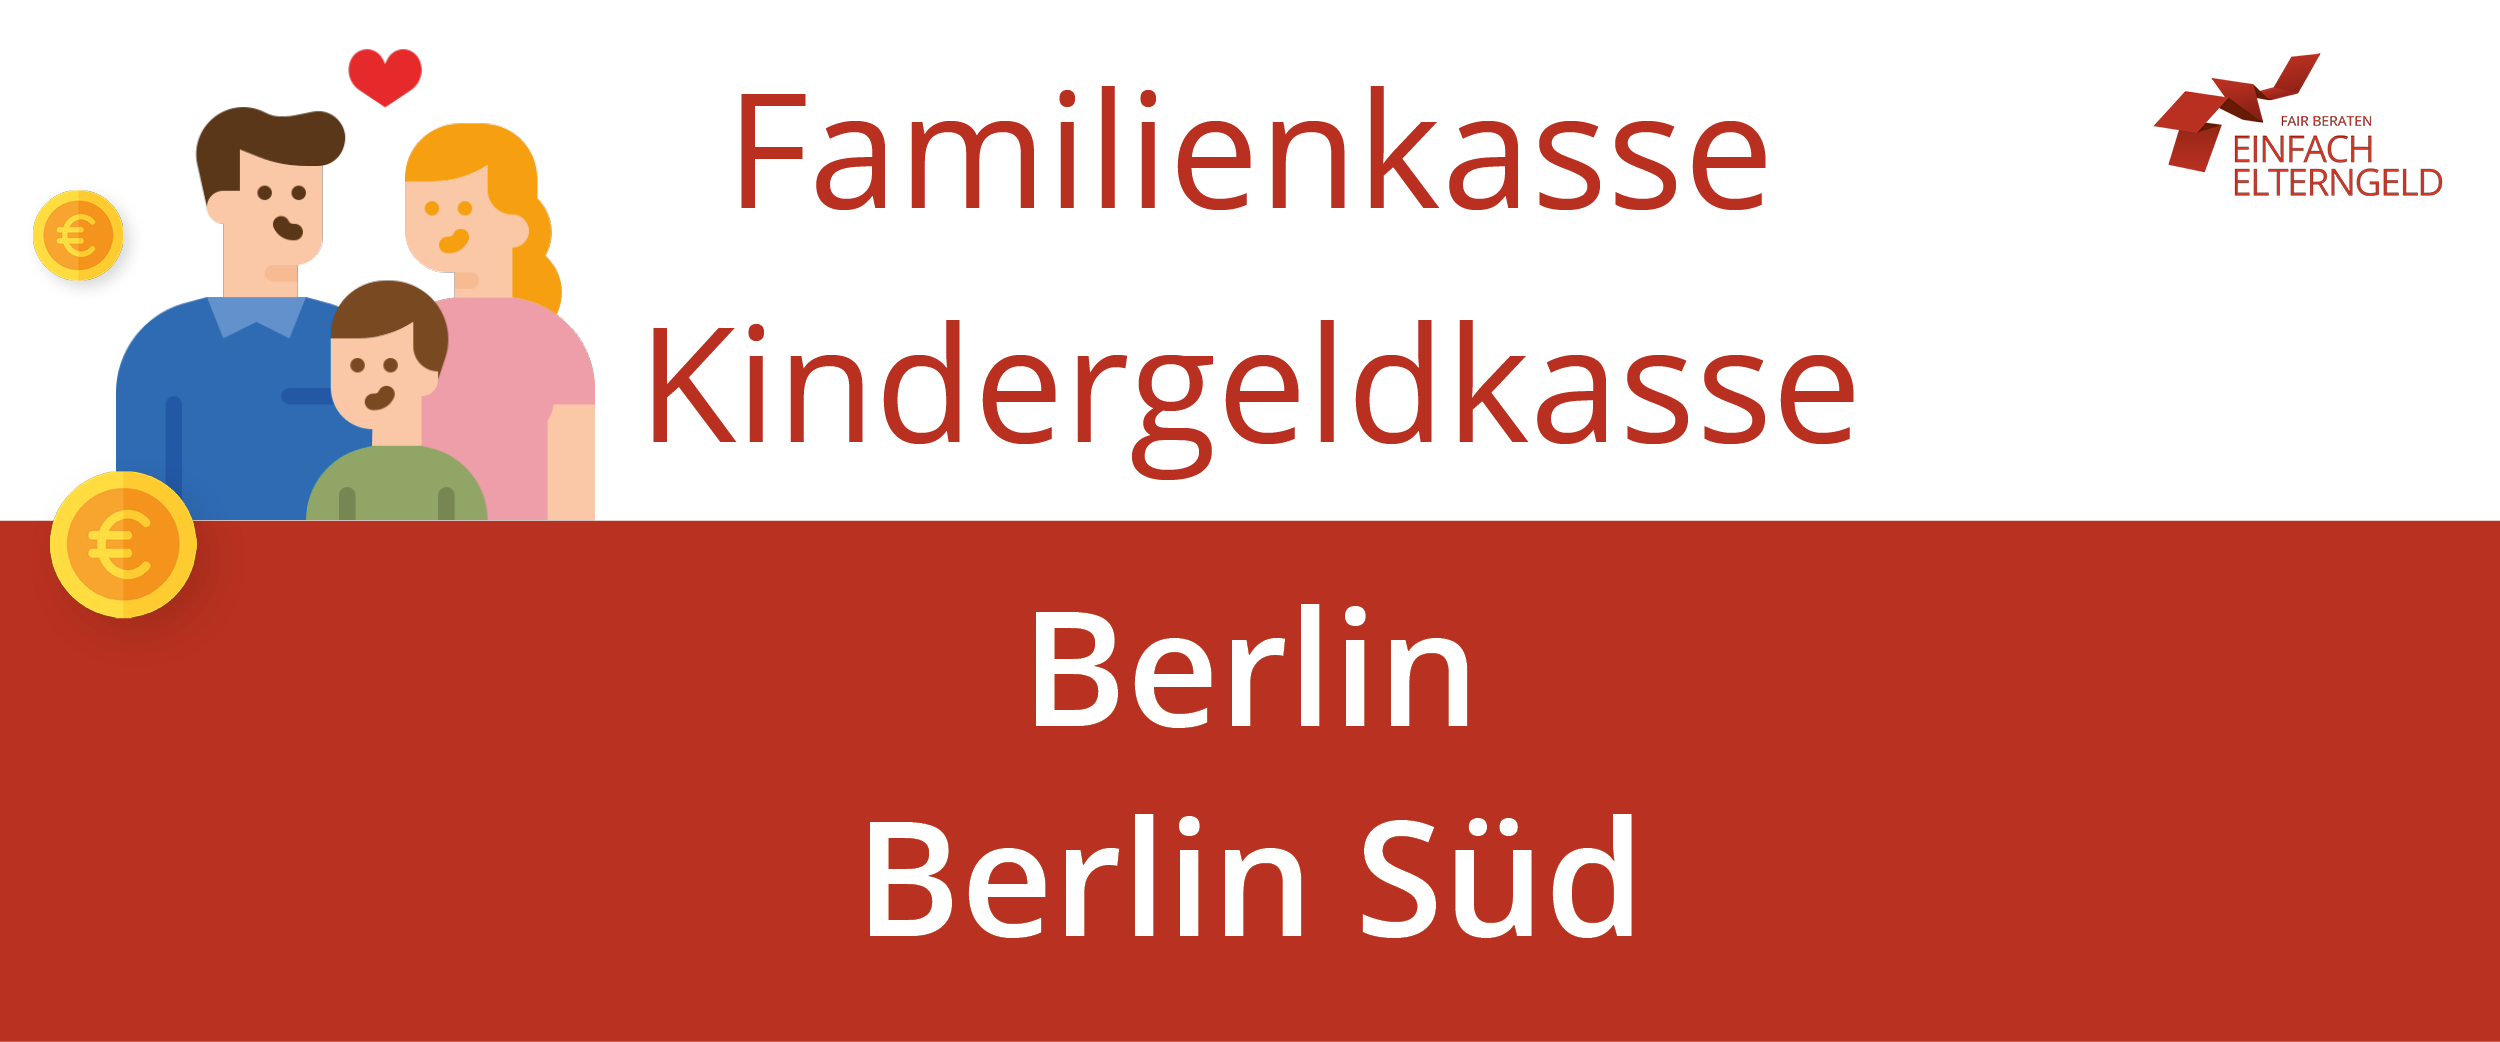 Wir stellen die Familienkasse Kindergeldkasse Berlin Süd vor.